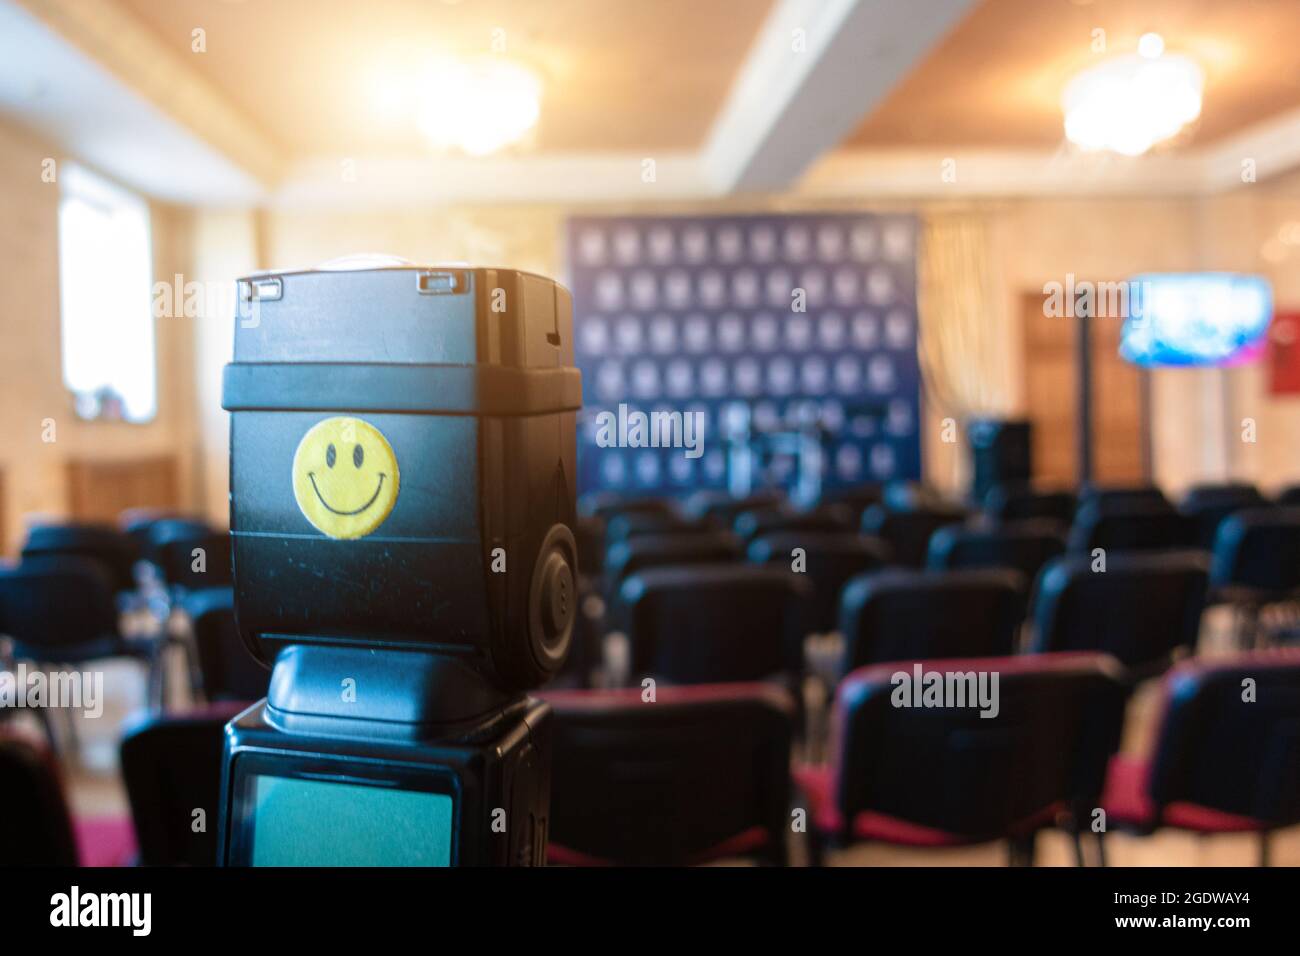 Flash portable de l'appareil photo contre l'arrière-plan de la salle pour les conférences de presse. L'émoticône smiley est bloquée sur le flash. Banque D'Images